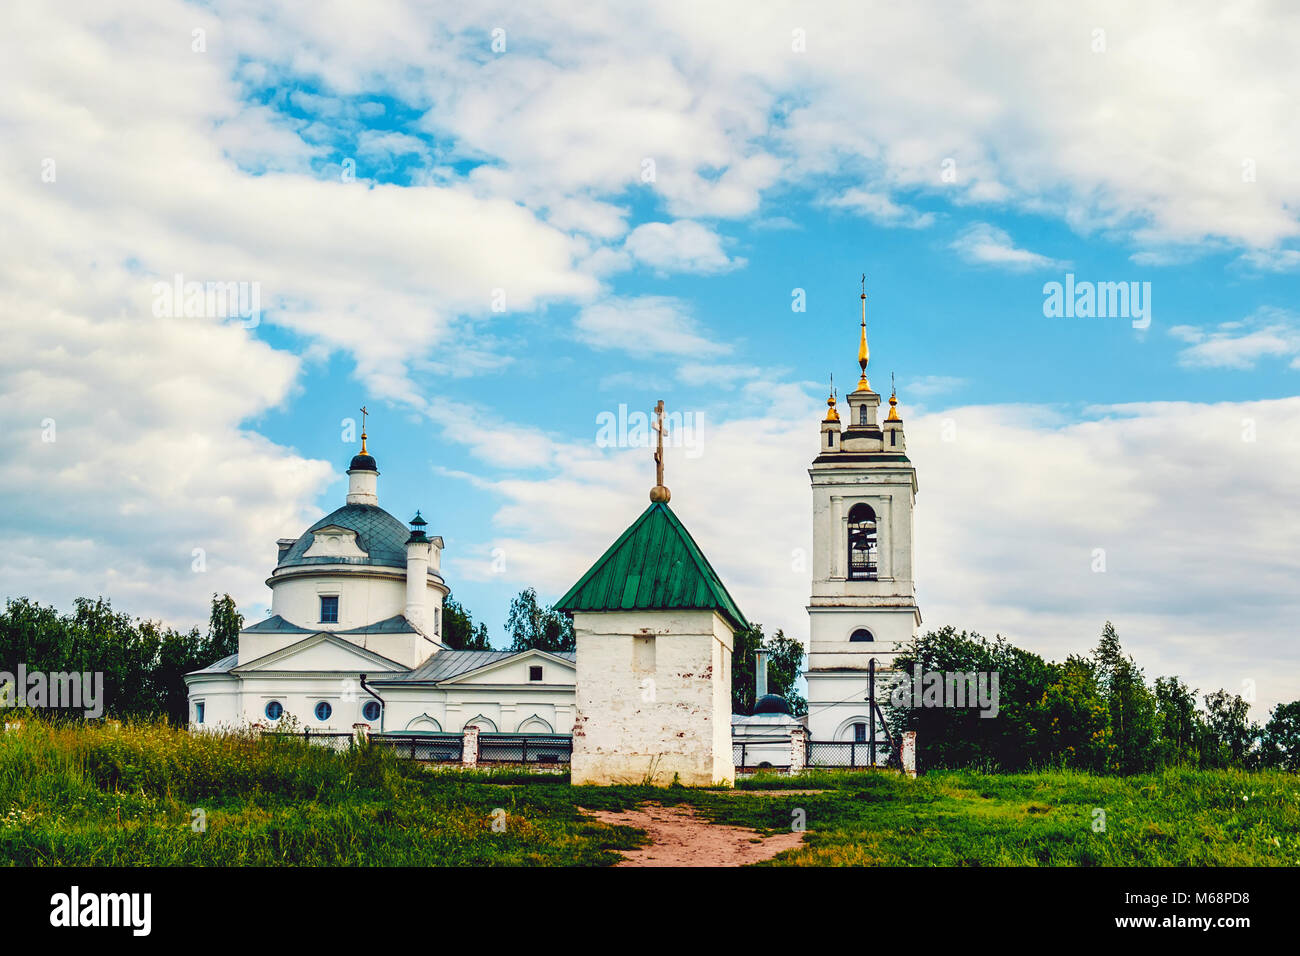 Bellissimo paesaggio con la famosa Chiesa in Russia, Konstantinovo, il luogo di nascita di Sergei Yesenin. Punto di riferimento russo. Un telaio orizzontale. Foto Stock